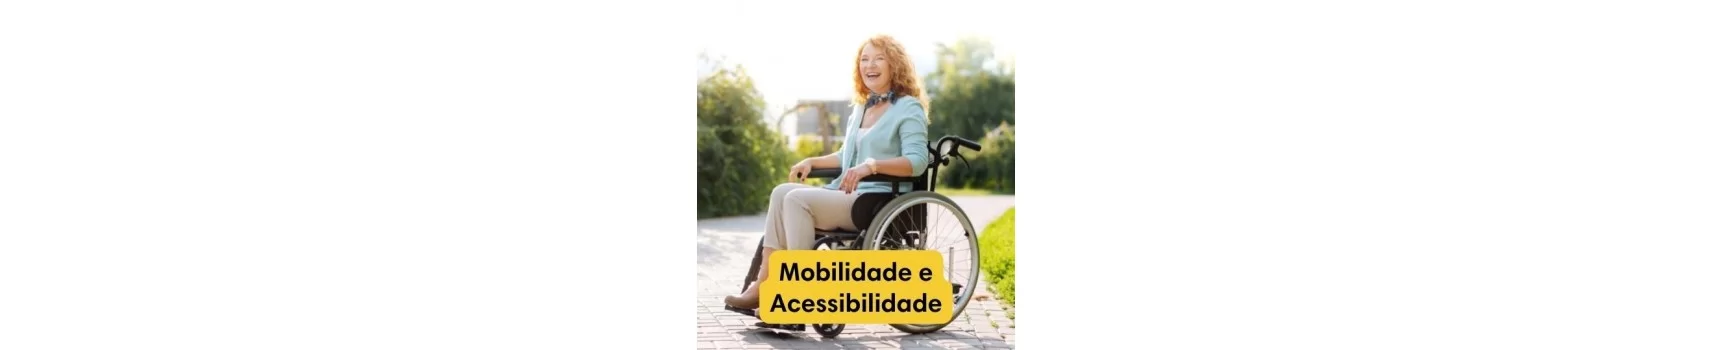 Mobilidade e Acessibilidade